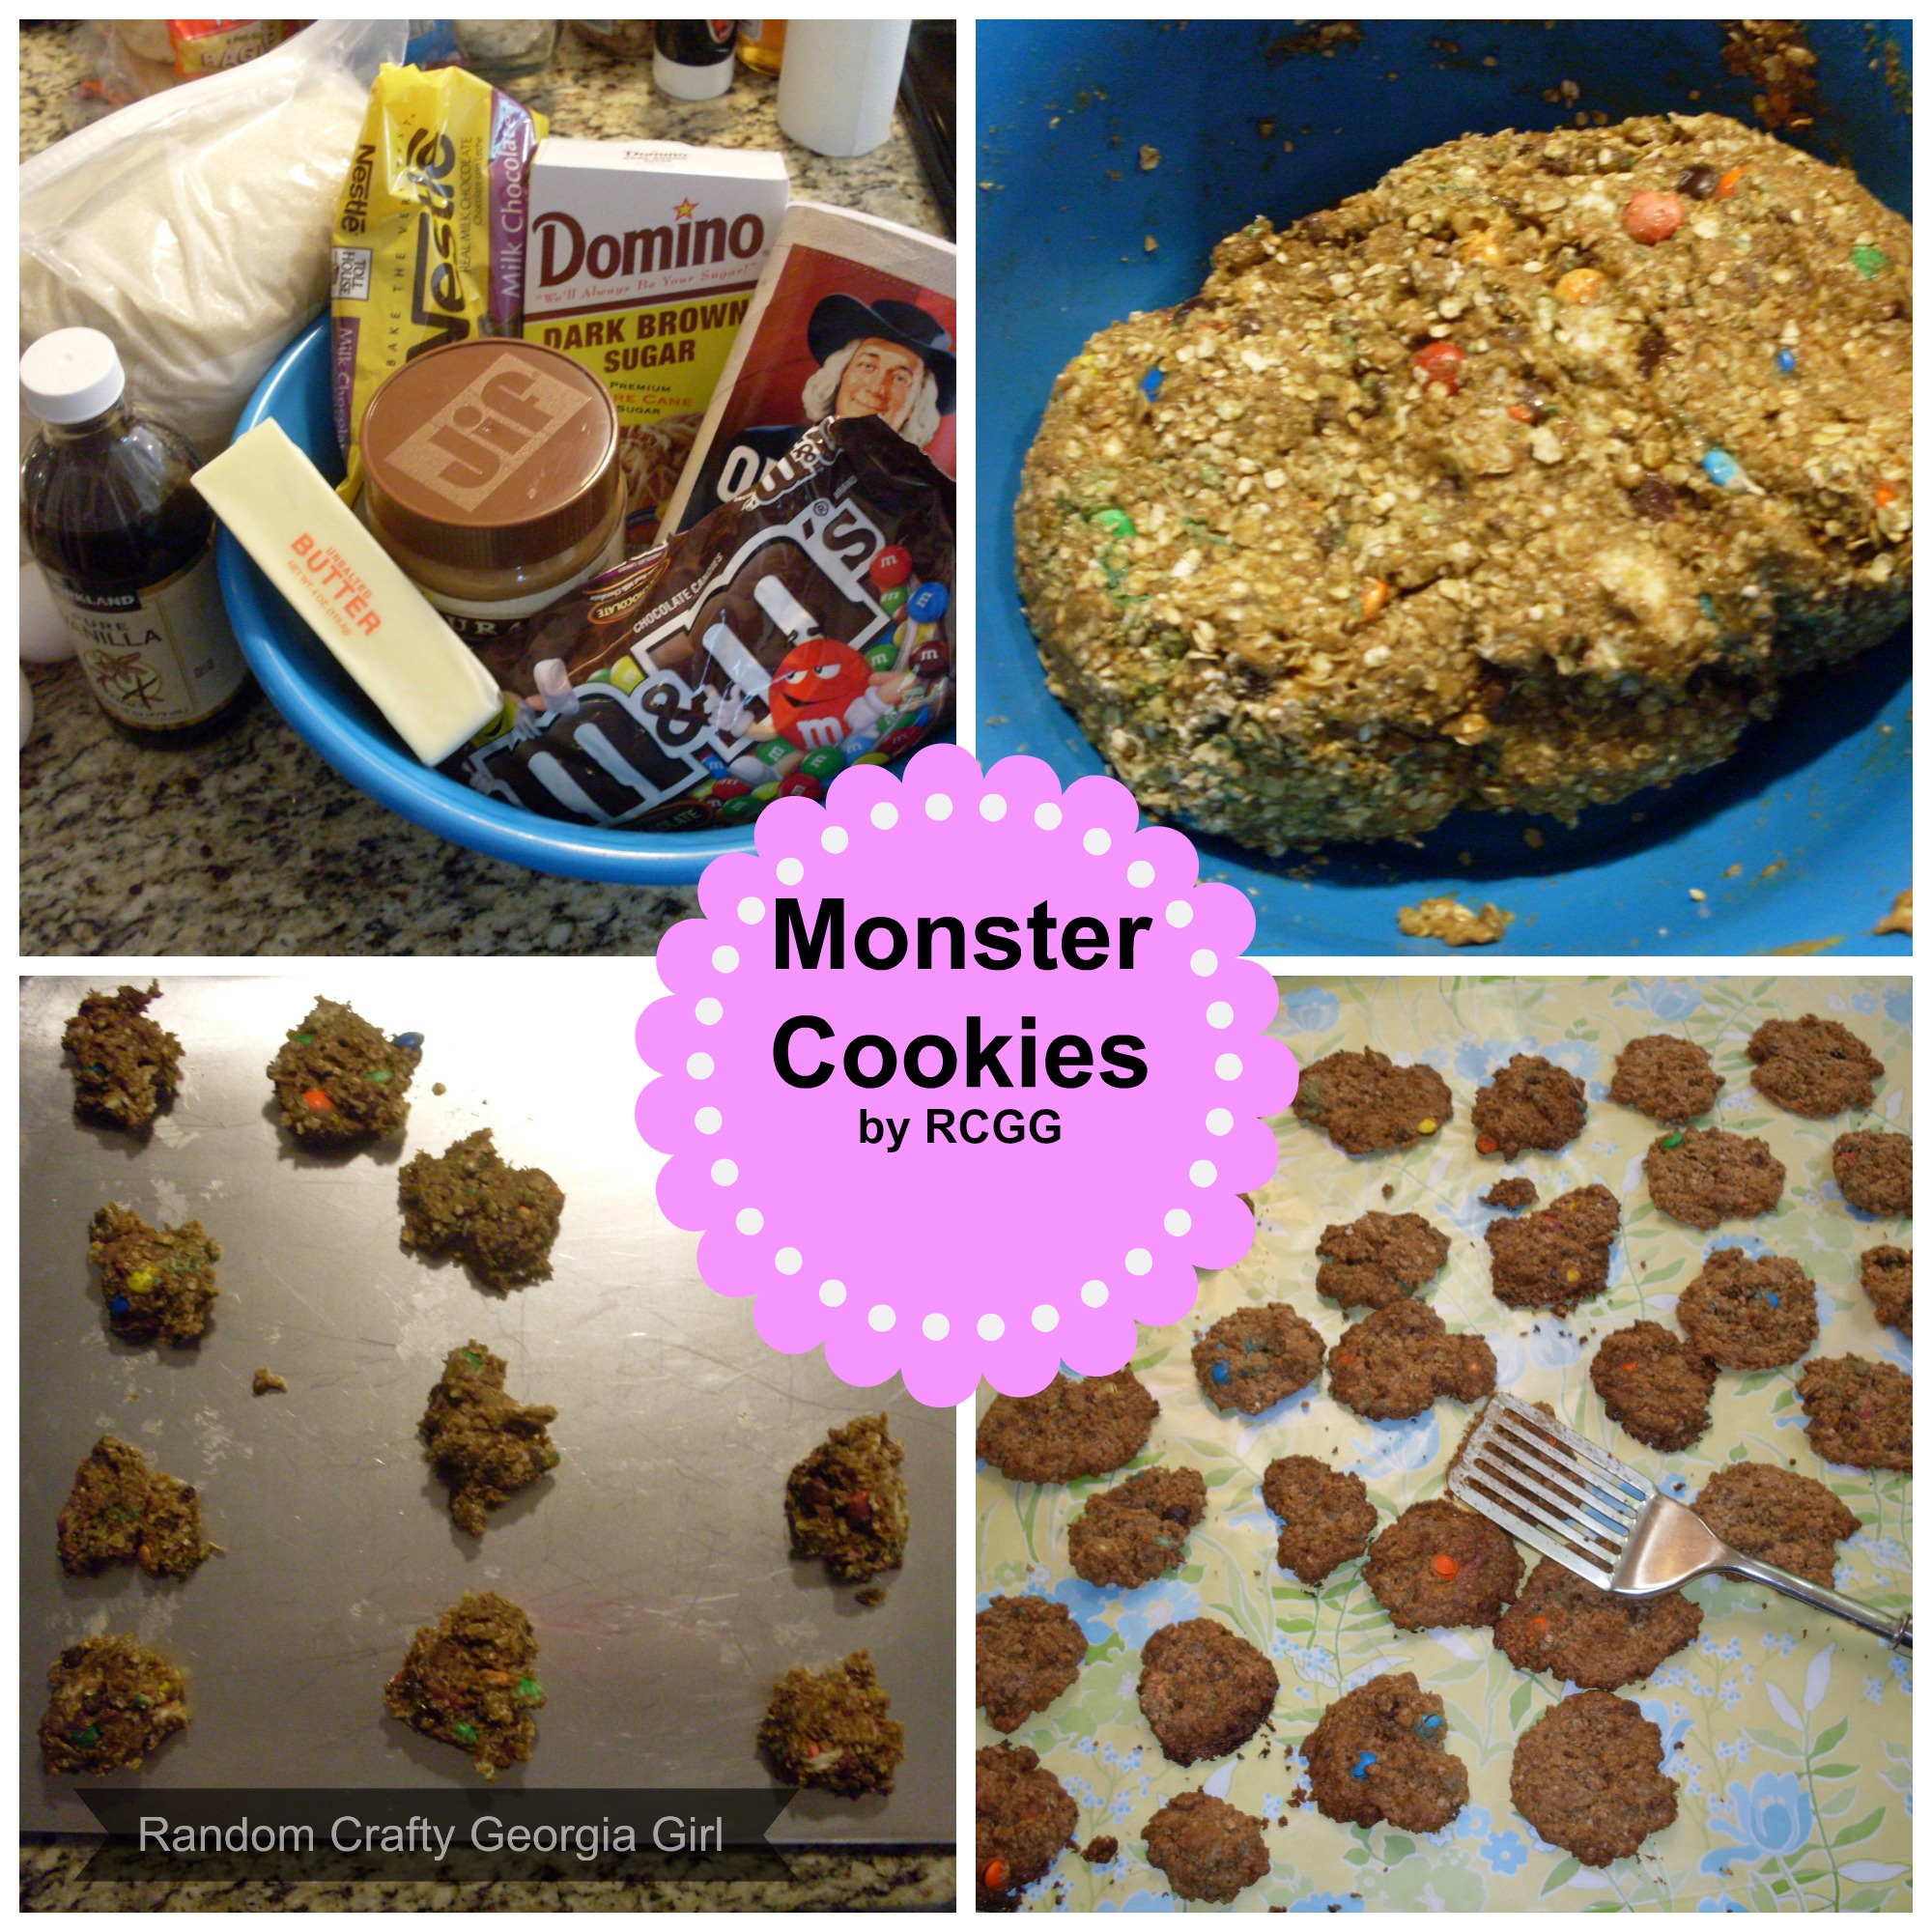 Random Crafty Georgia Girl 12 Days of Cookies 2016 holiday series Monster Cookies